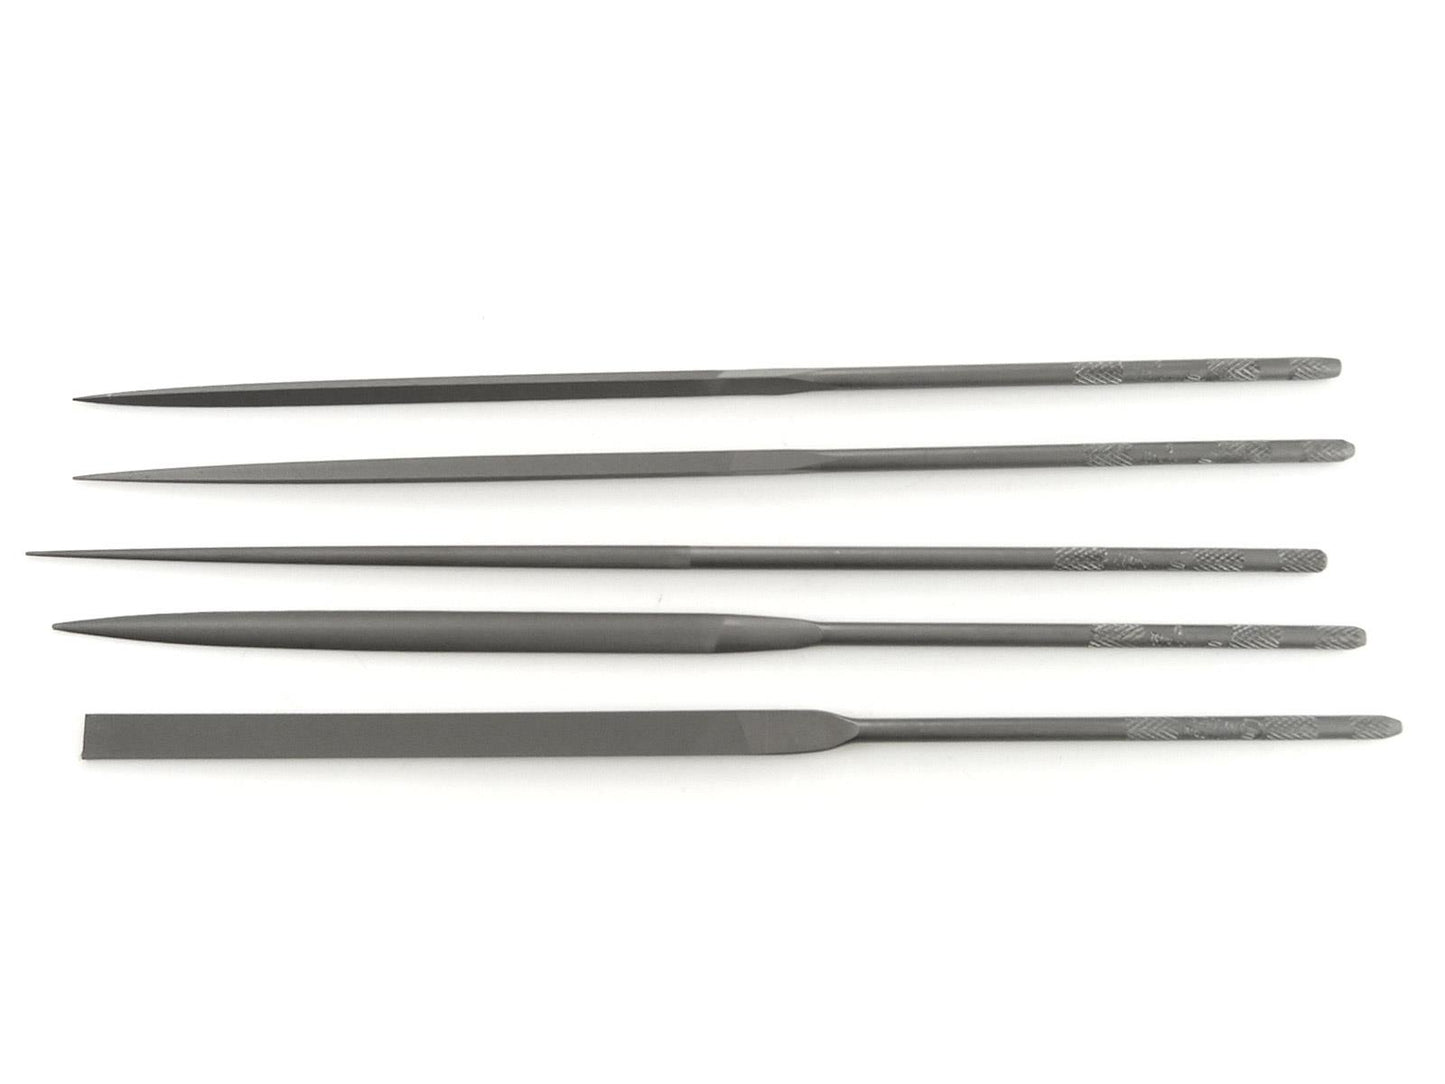 Tsubosan Swiss Cut Precision Needle Files - 200mm (Set of 5)